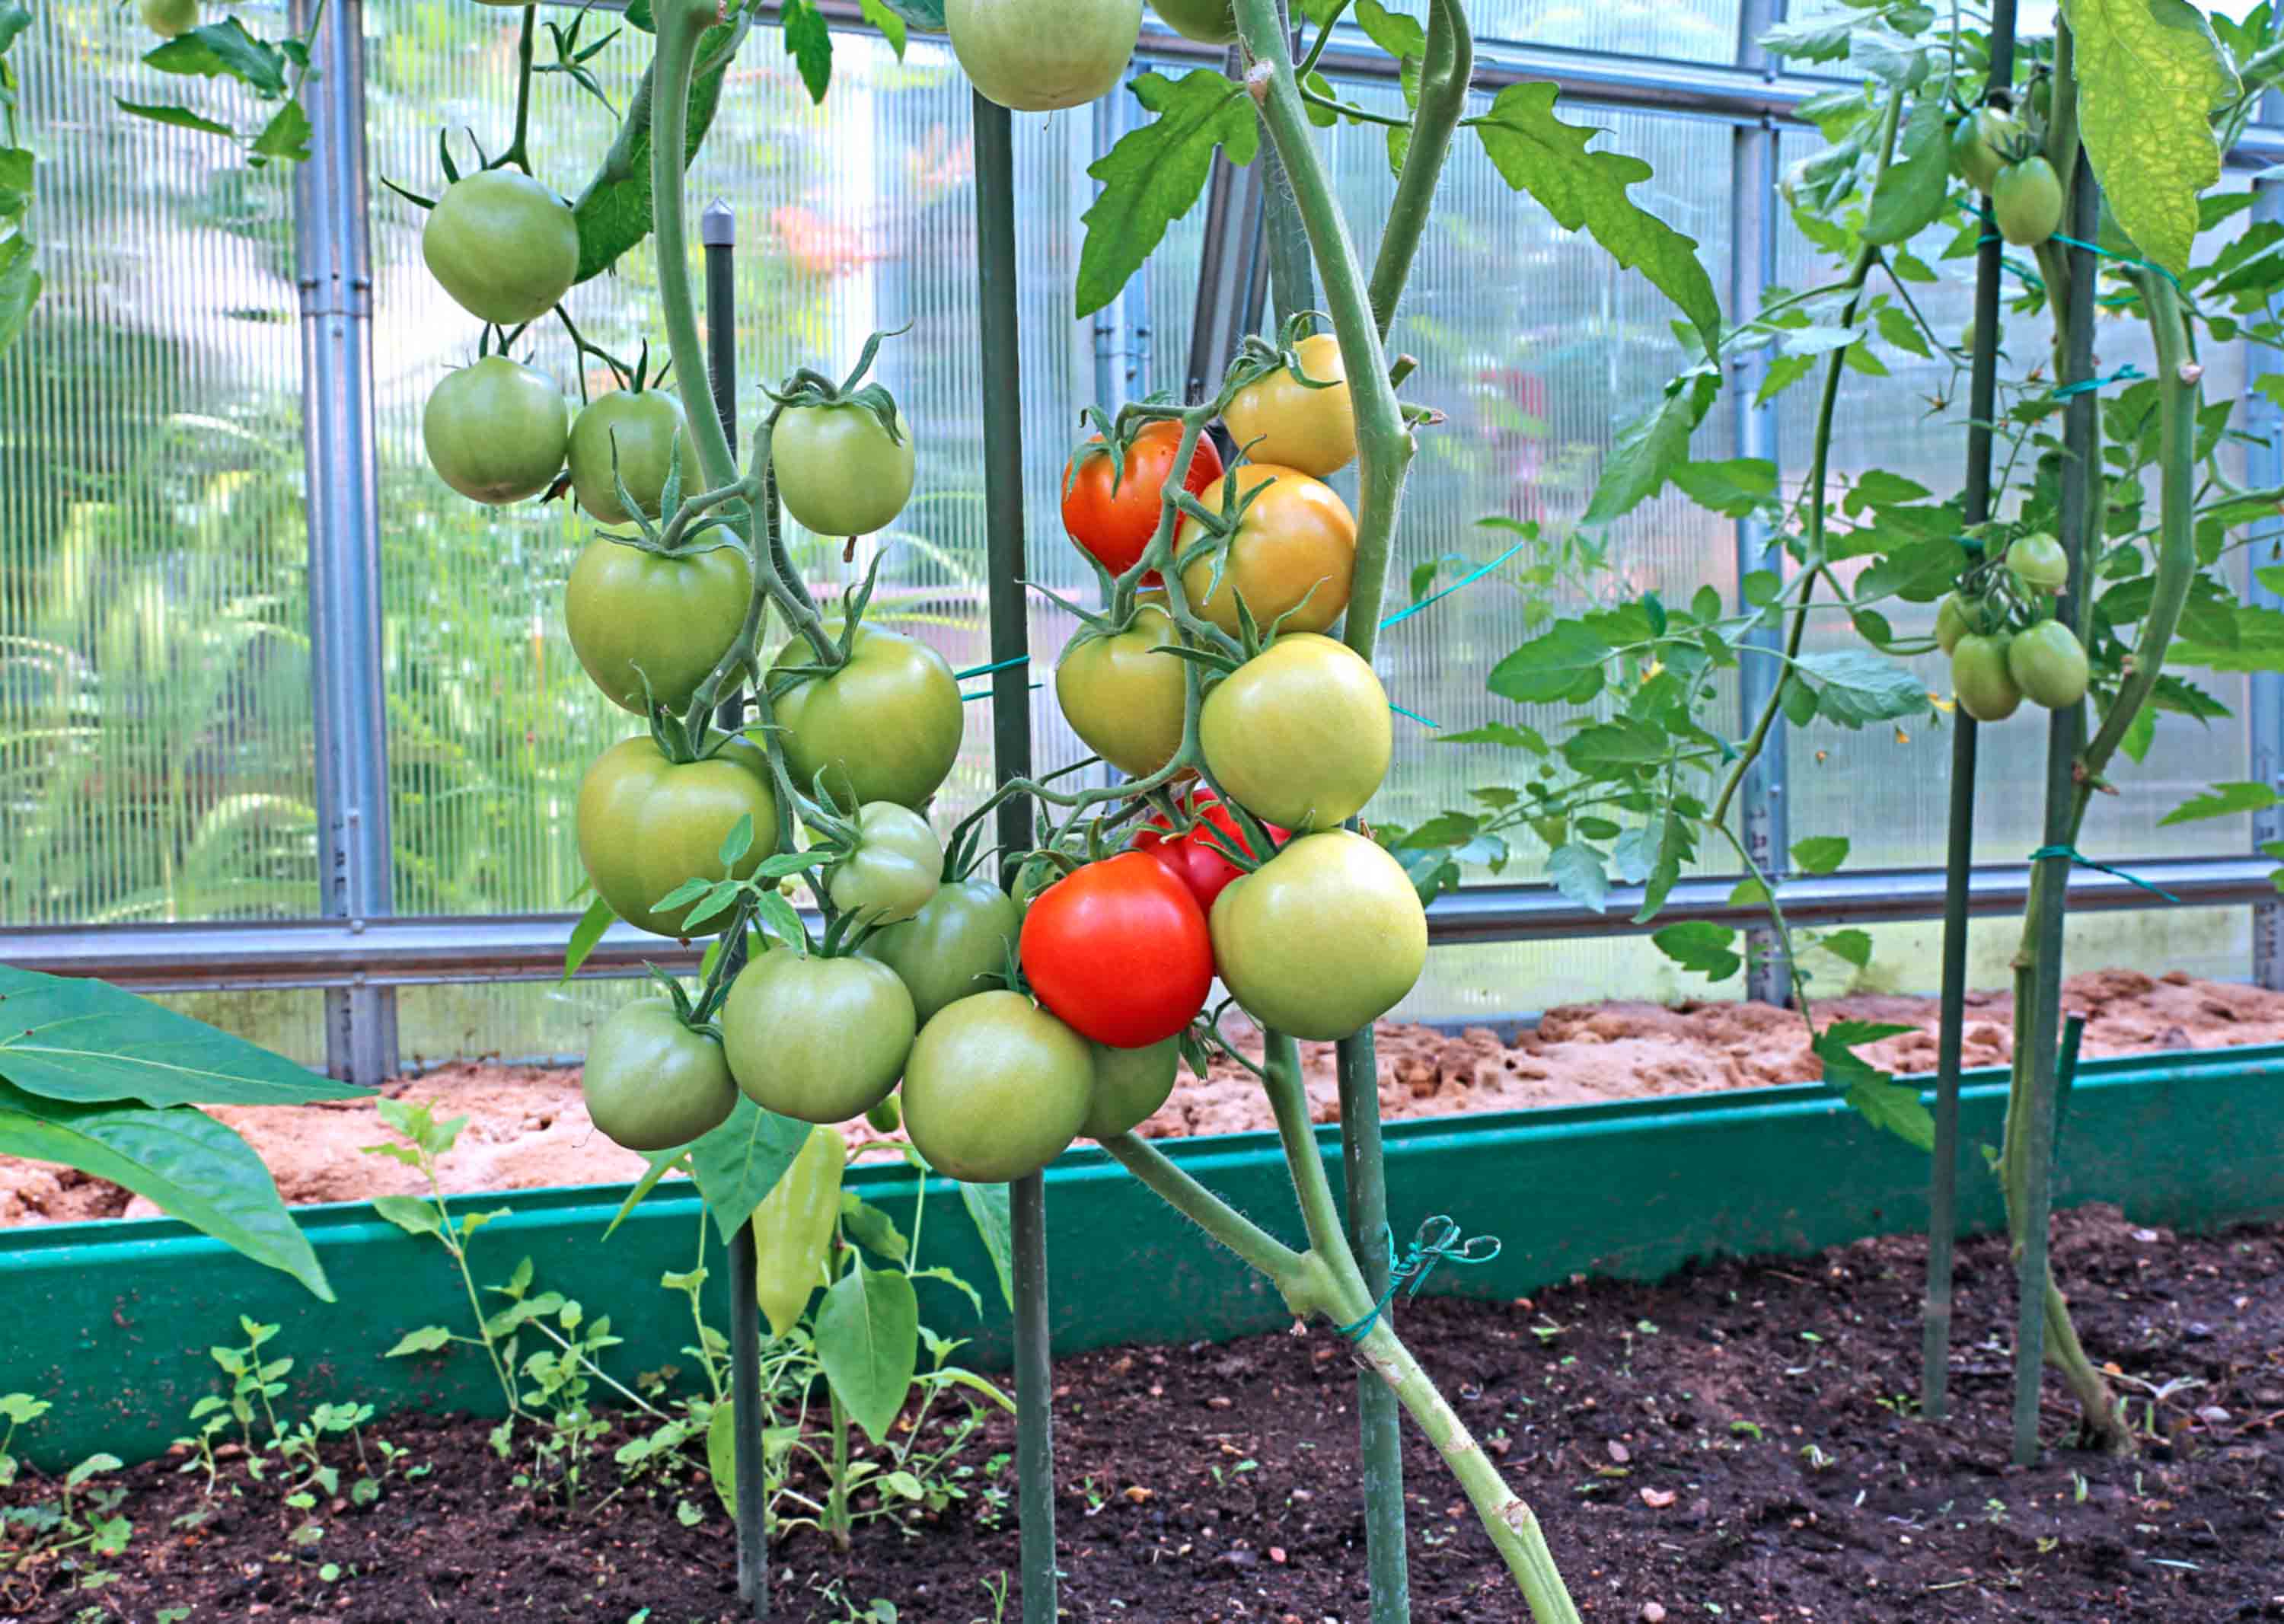 выращивание помидоров в теплице из поликарбоната